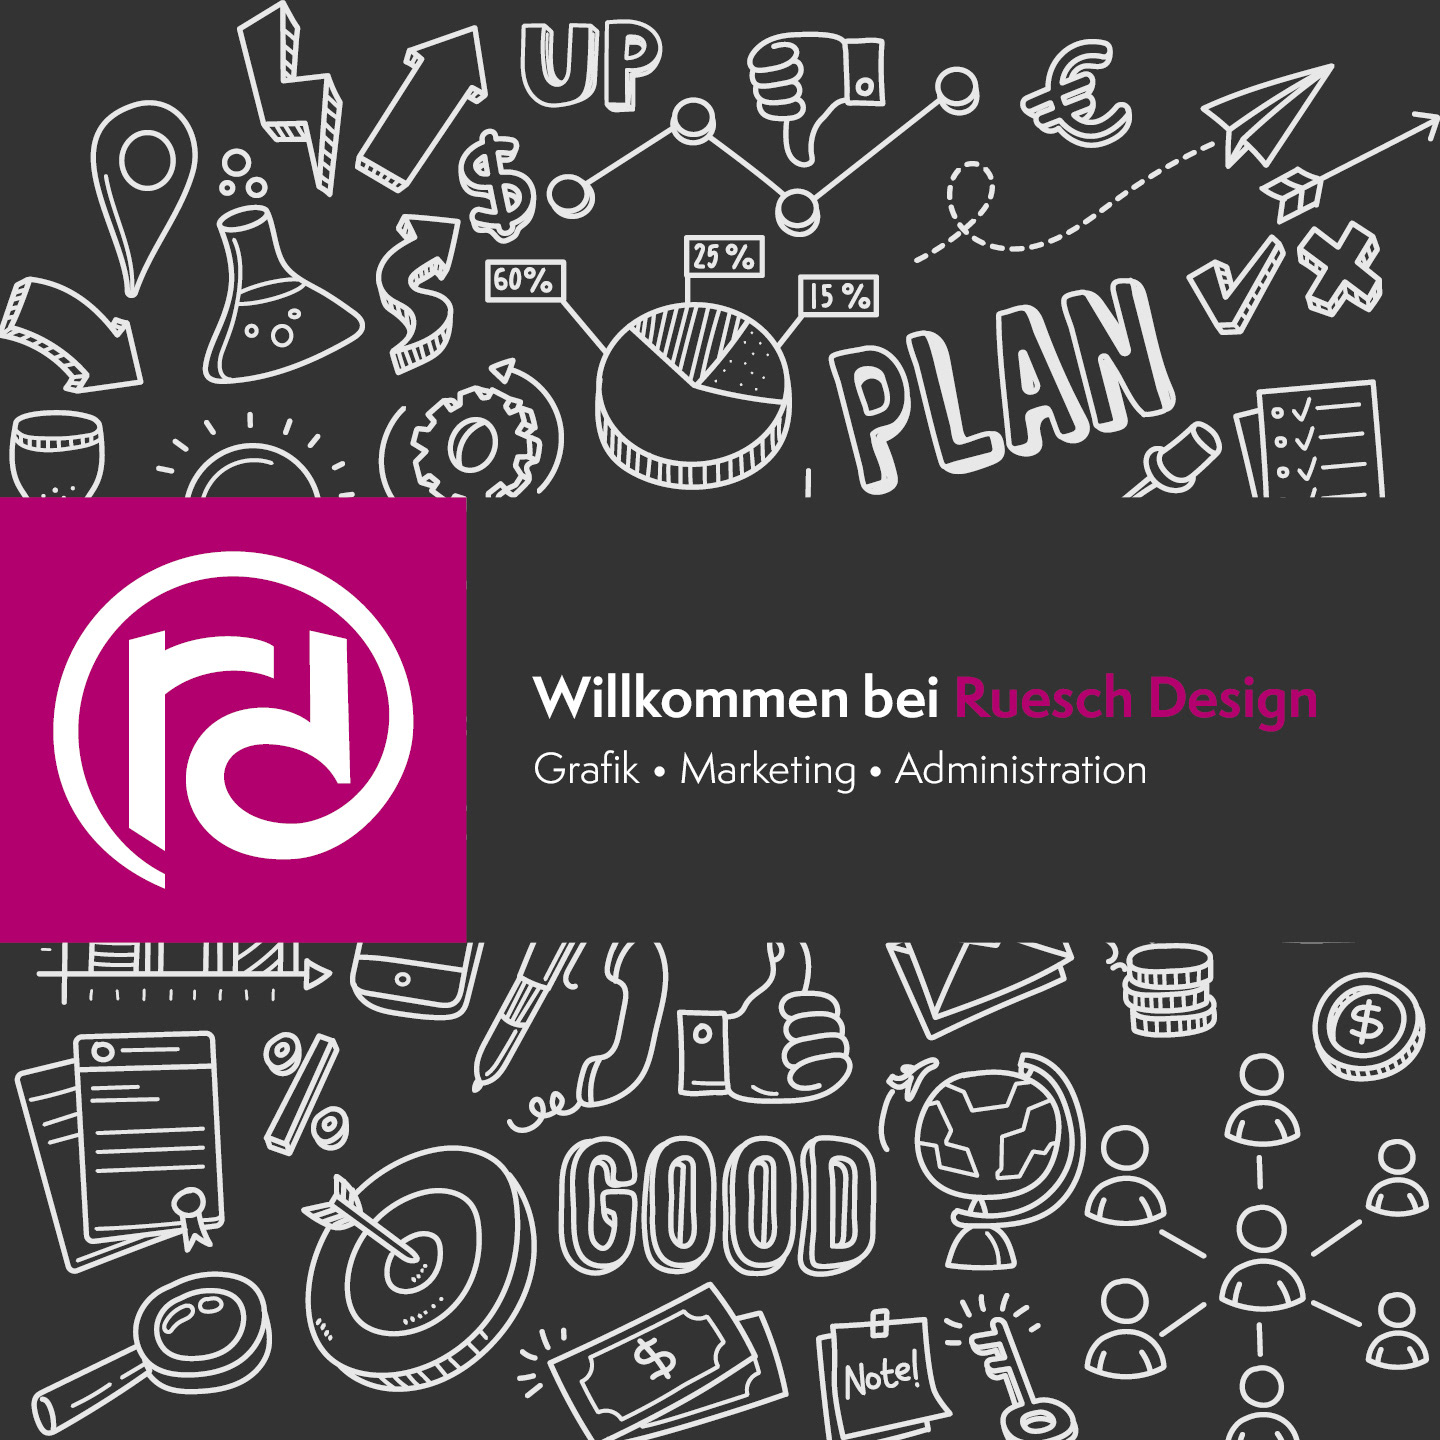 (c) Ruesch-design.ch